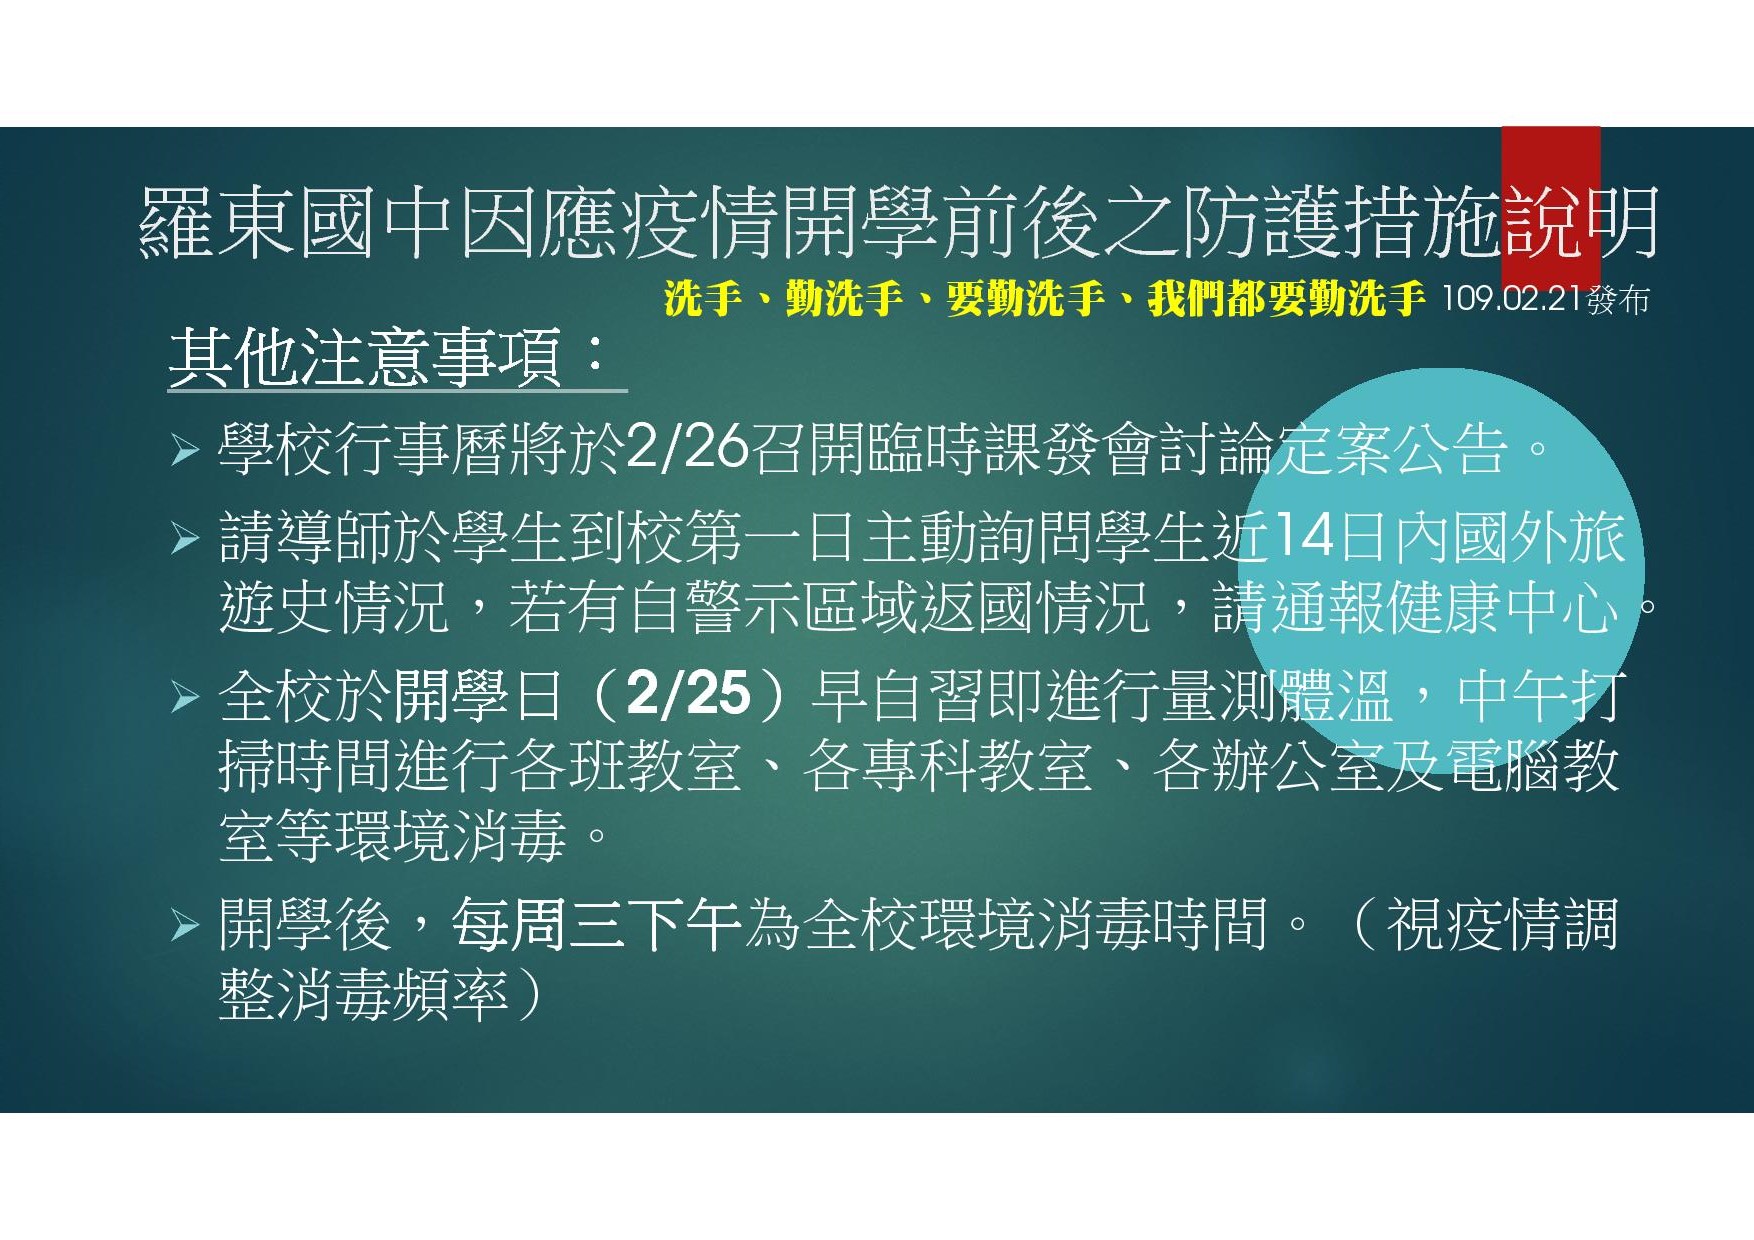 02 羅東國中因應中國大陸新型冠狀病毒肺炎疫情開學前後之防護措施說明1090221-45